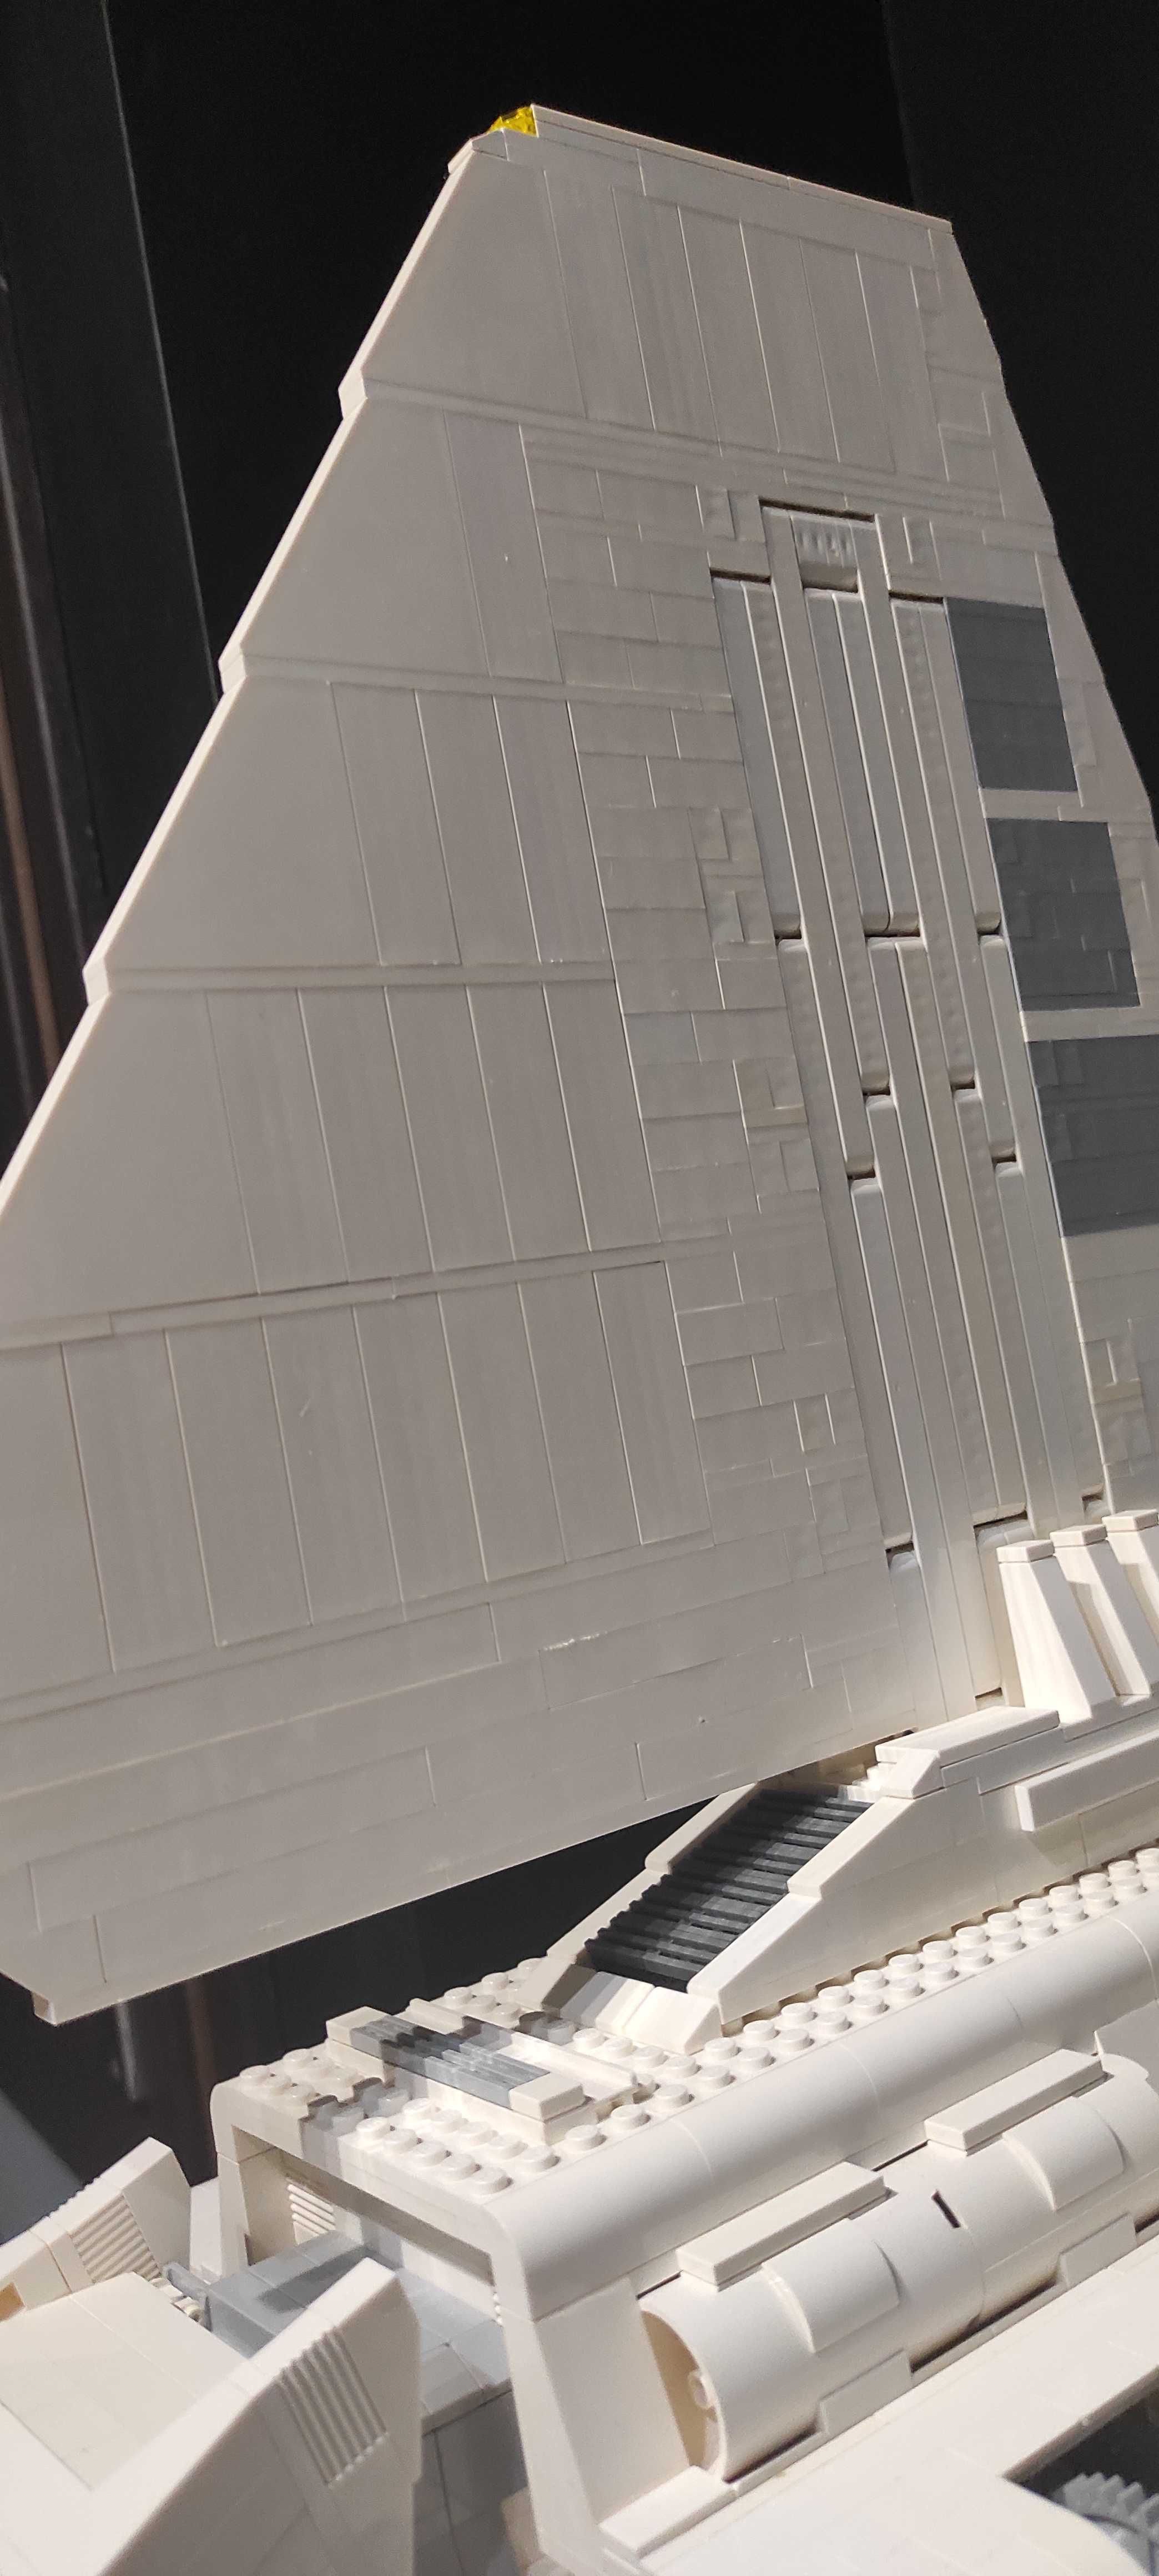 LEGO STAR WARS 10212 UCS Imperial Shuttle